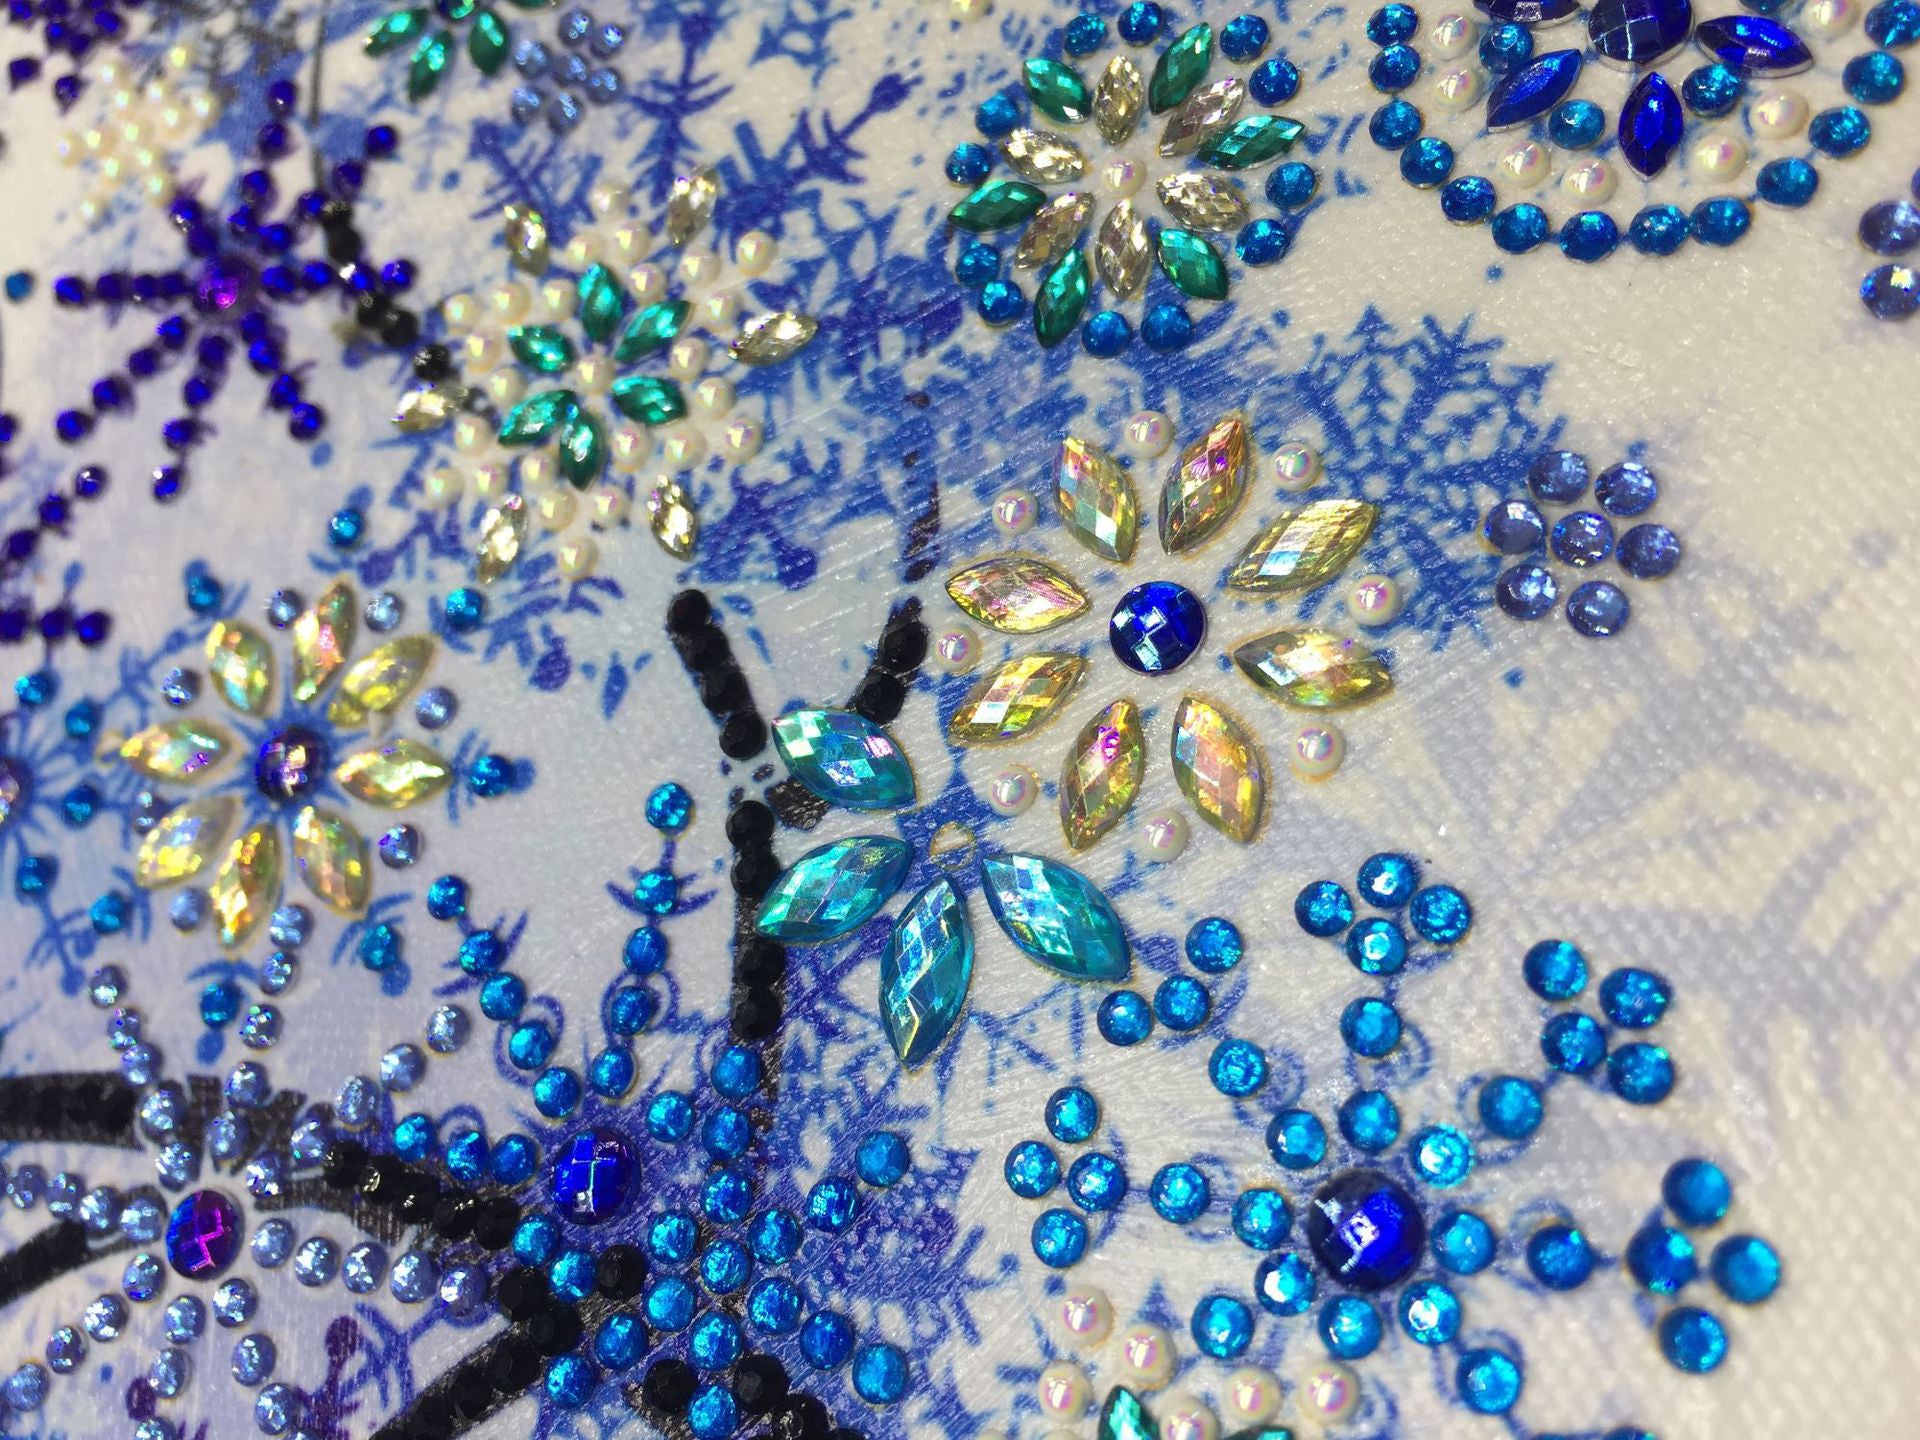 5D Diy Diamond Embroidery Four Seasons Flower Tree Special Shape Diamond Painting Rhinestone Crystal Diamond New Decoration